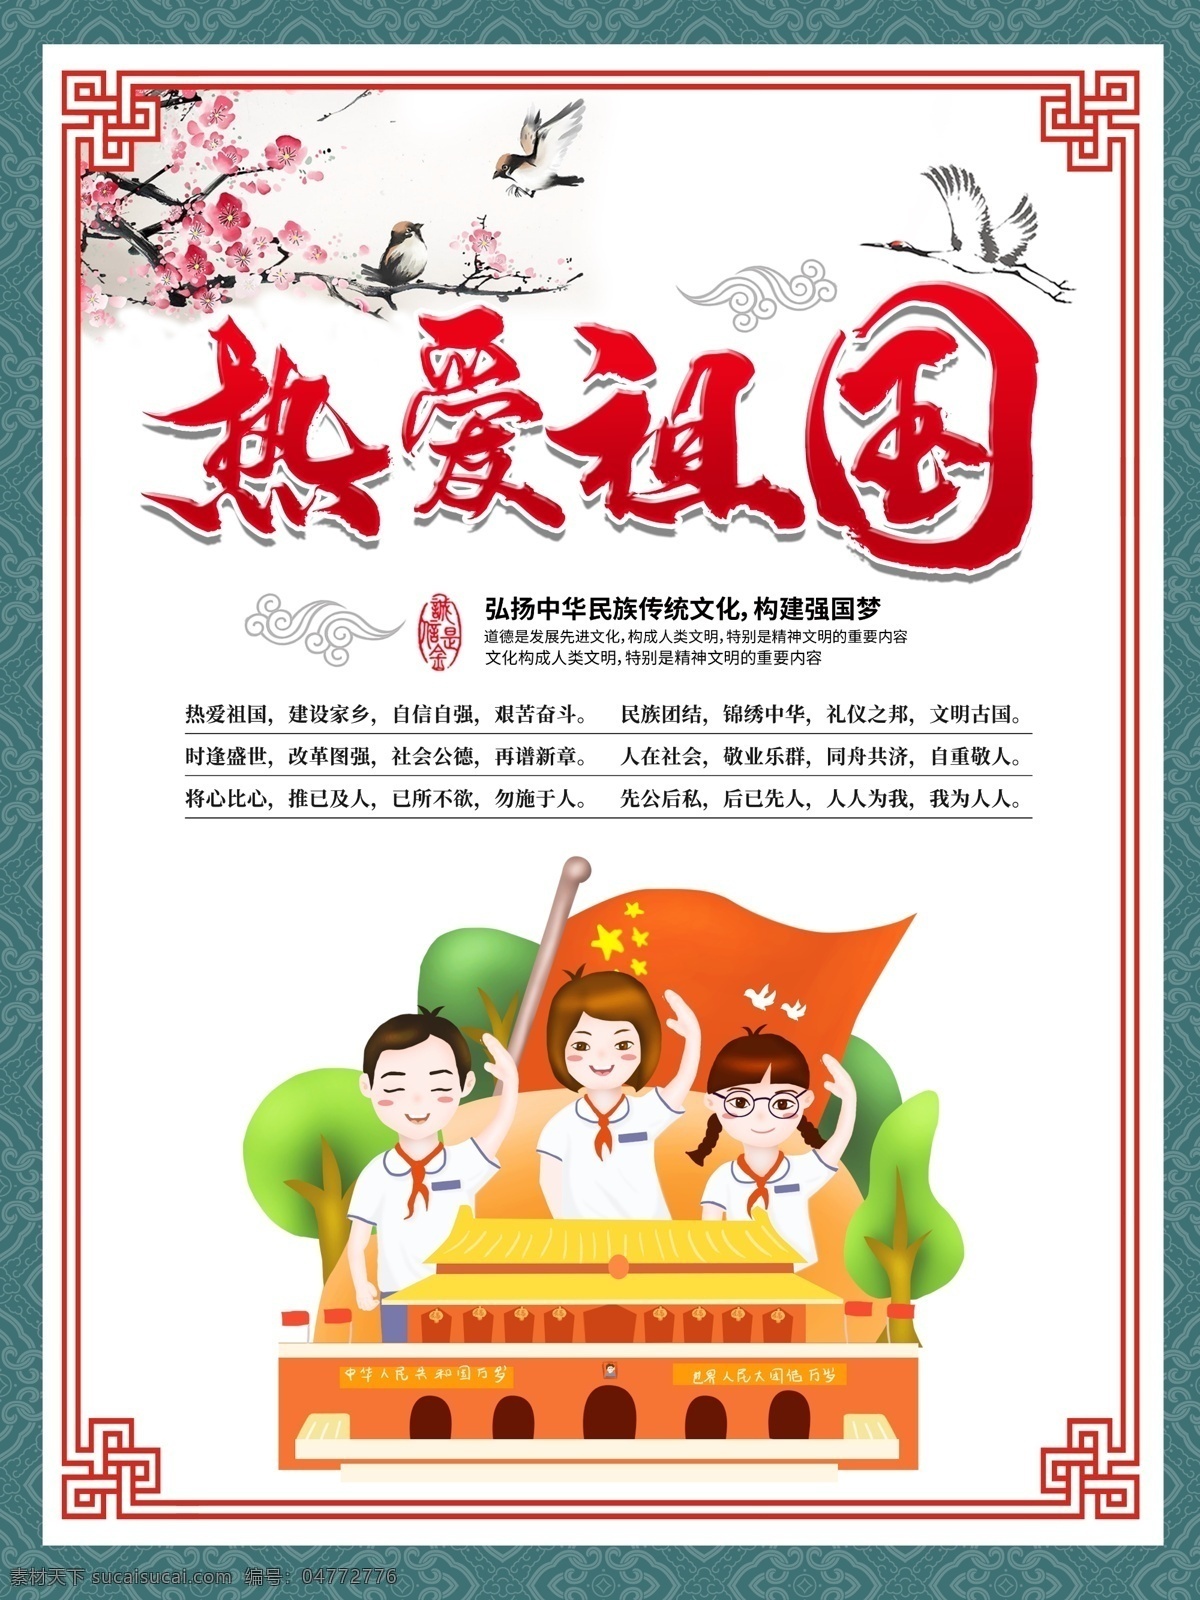 热爱祖国 校园文化 社会核心思想 中国传统文化 强国梦 公益广告 社会主义